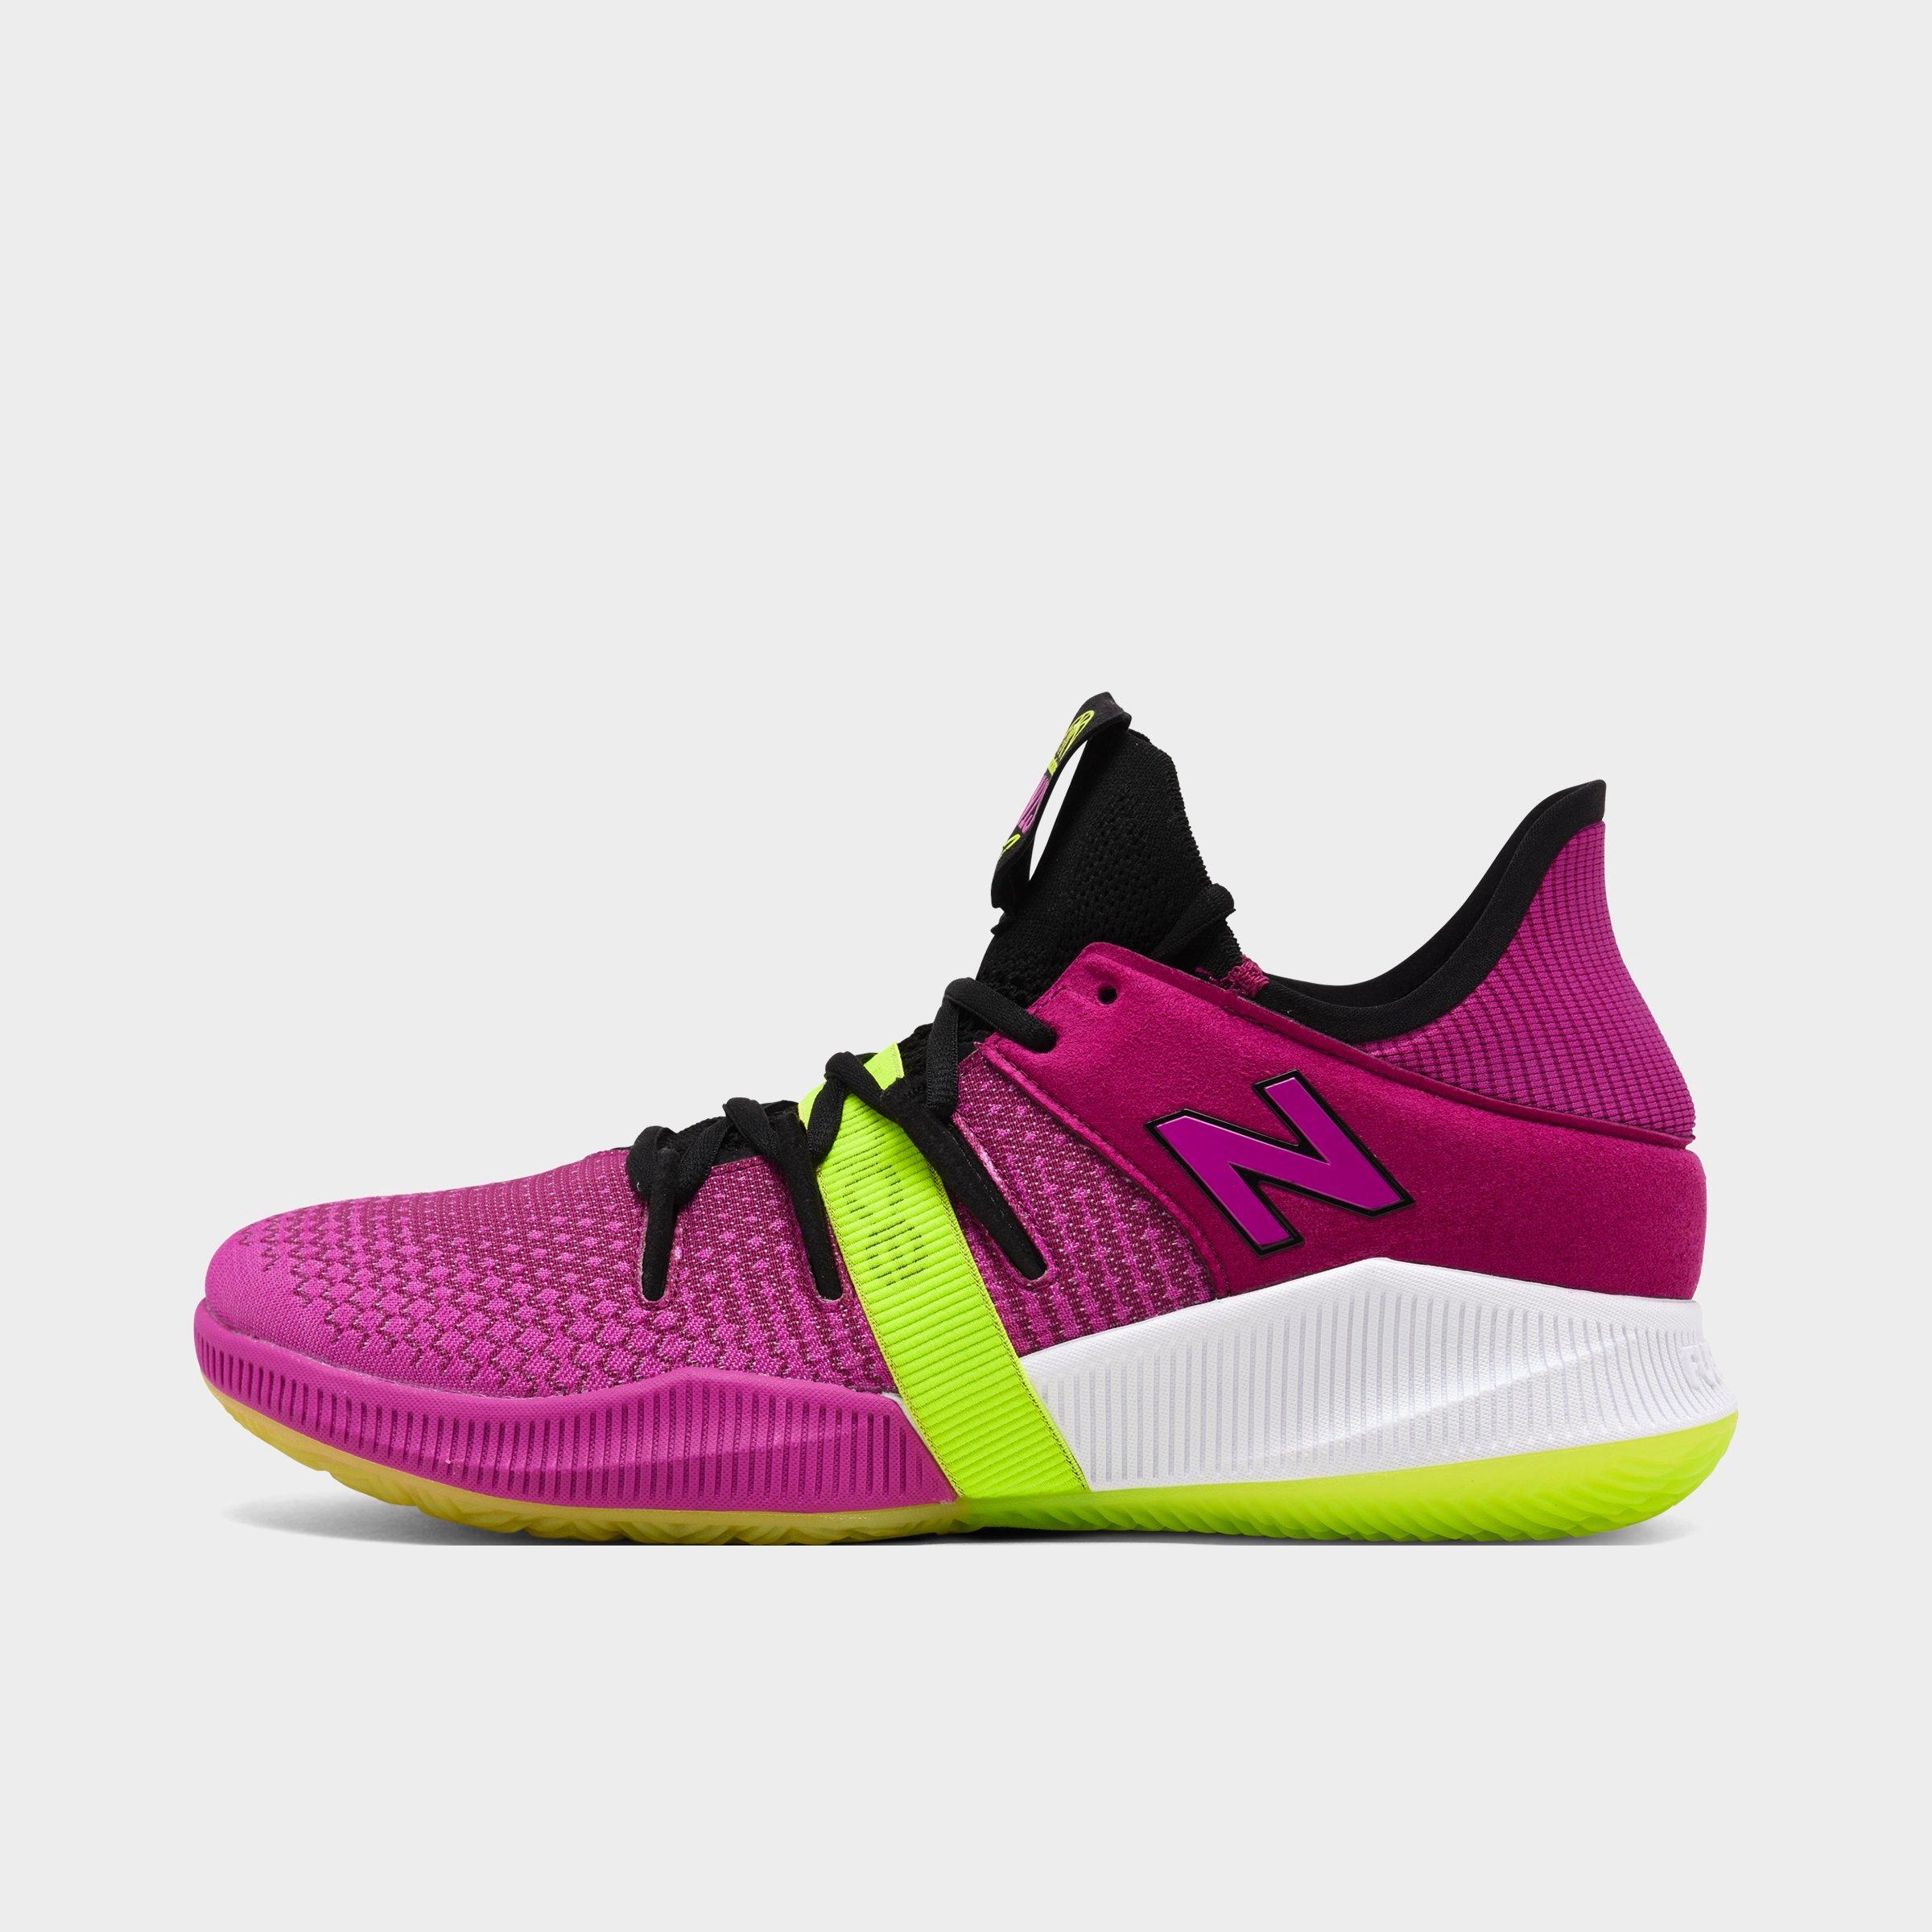 new balance basketball shoes kawhi price